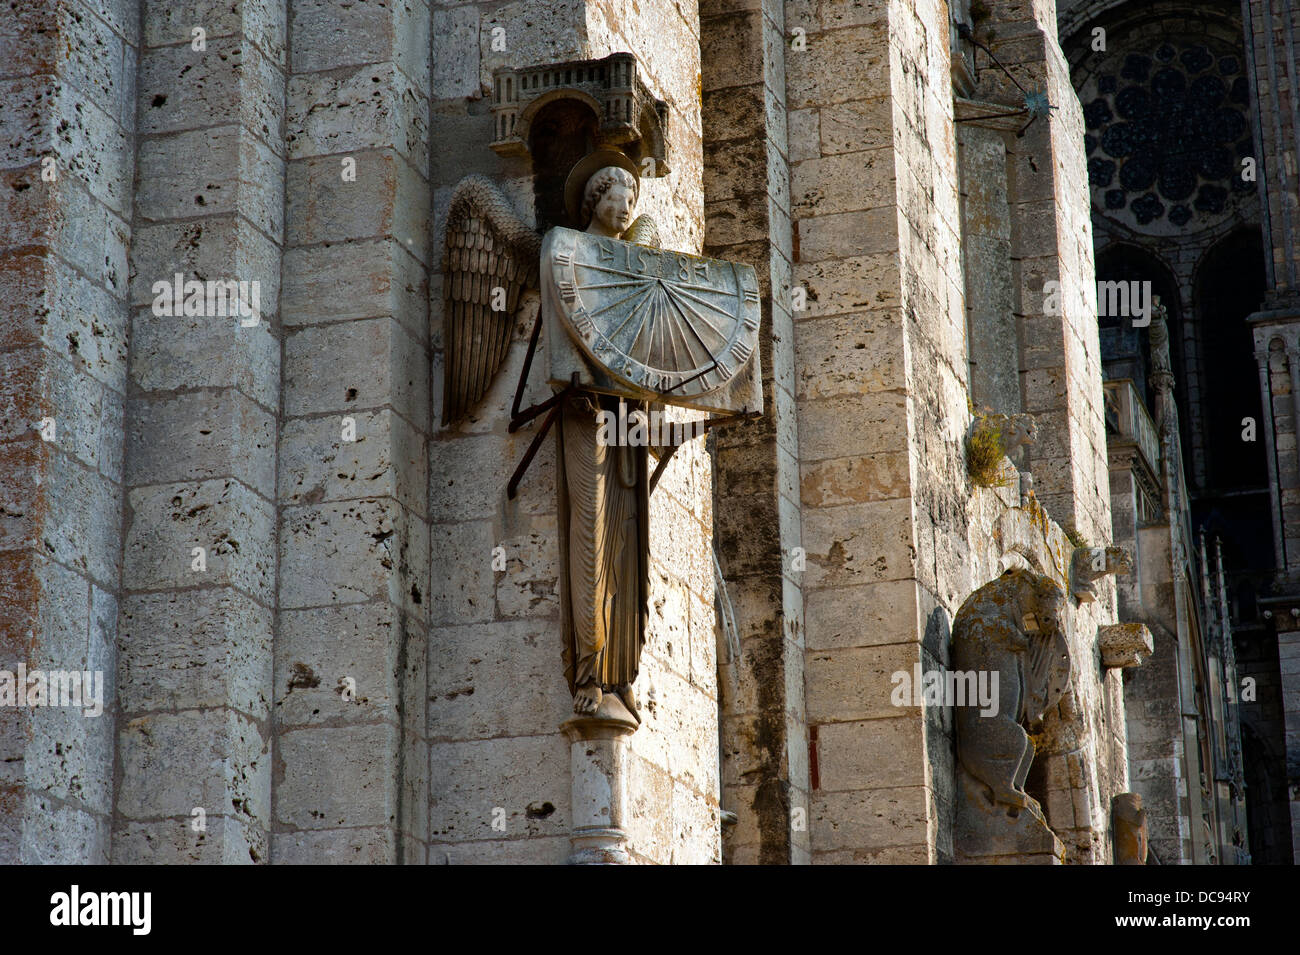 La cattedrale di Chartres, la Valle della Loira, in Francia. Luglio 2013 iniziata nel 1020, la cattedrale romanica fu distrutta nel 1194. Foto Stock